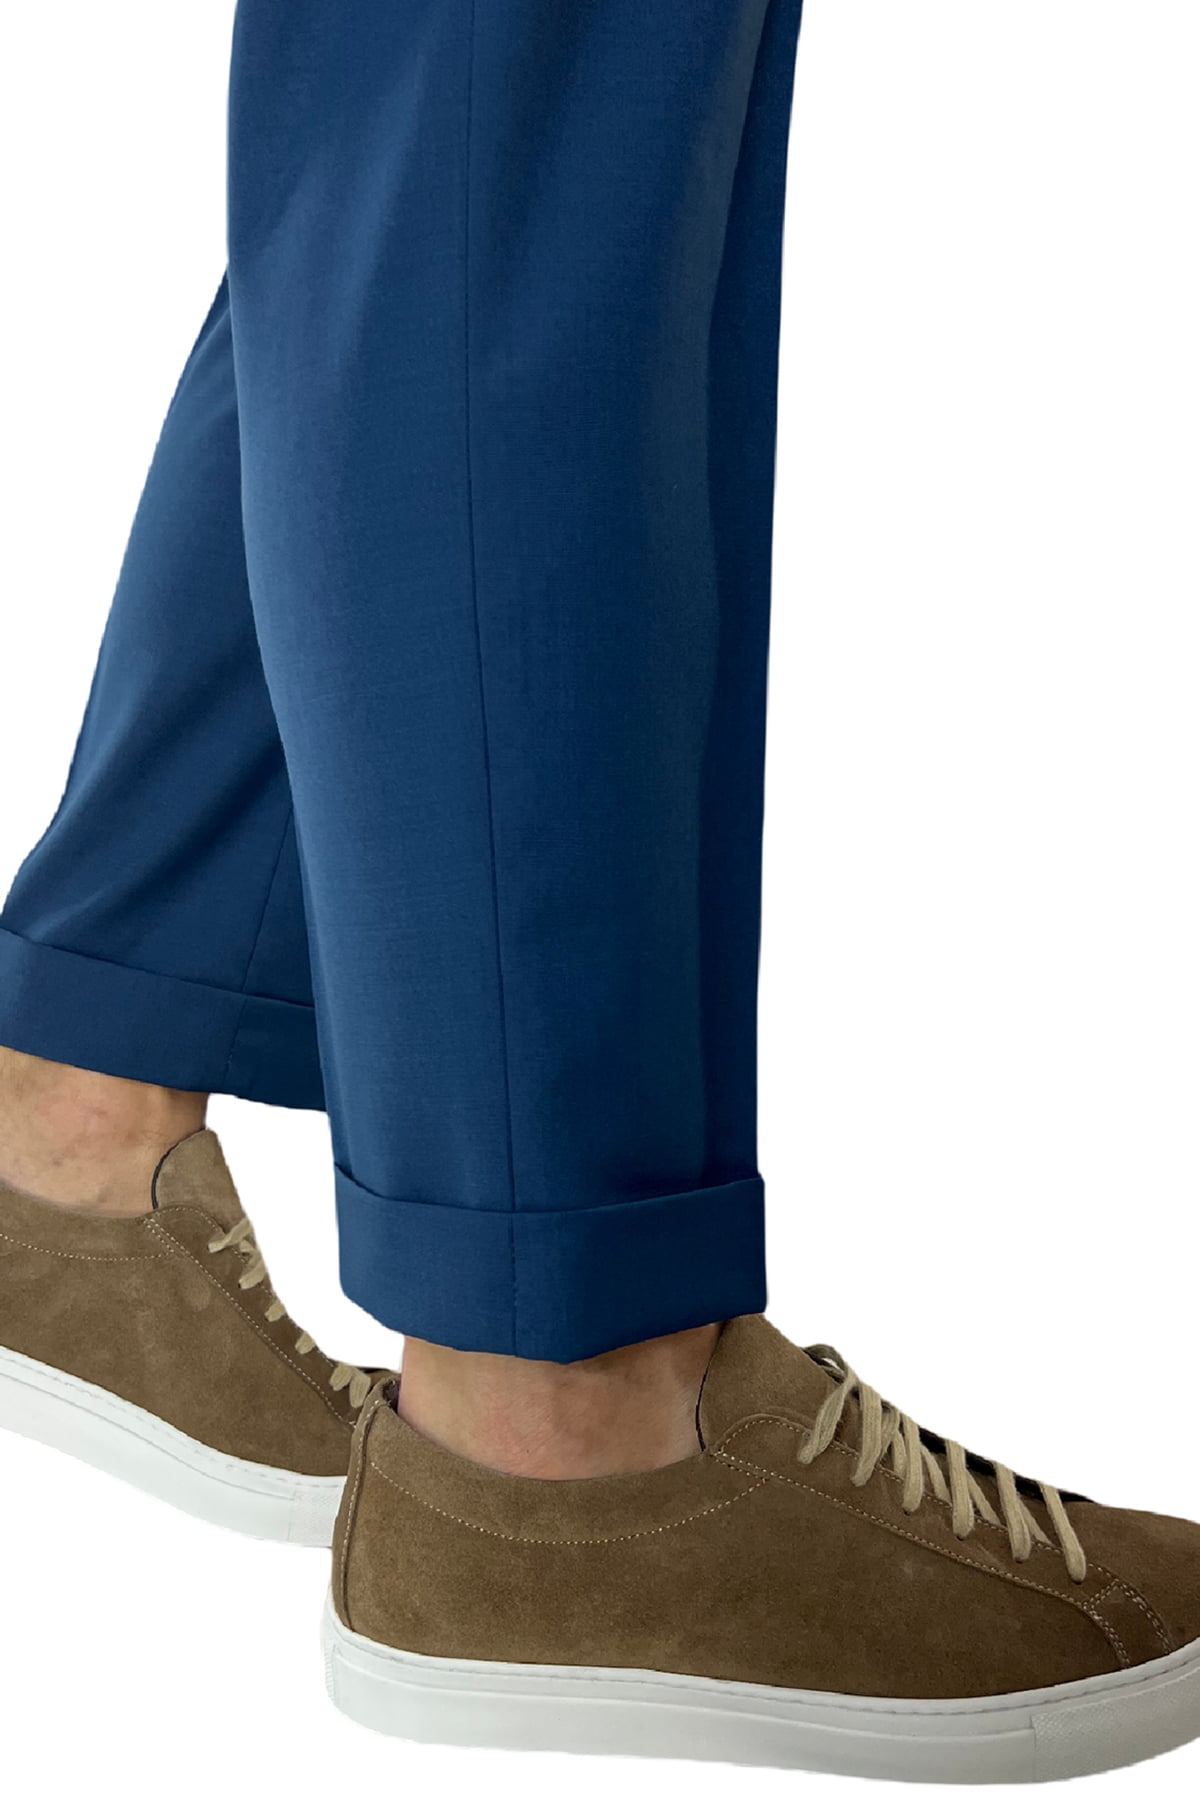 Pantalaccio uomo royal blu in fresco lana tasca america con doppia pence e laccio in vita risvolto 4cm